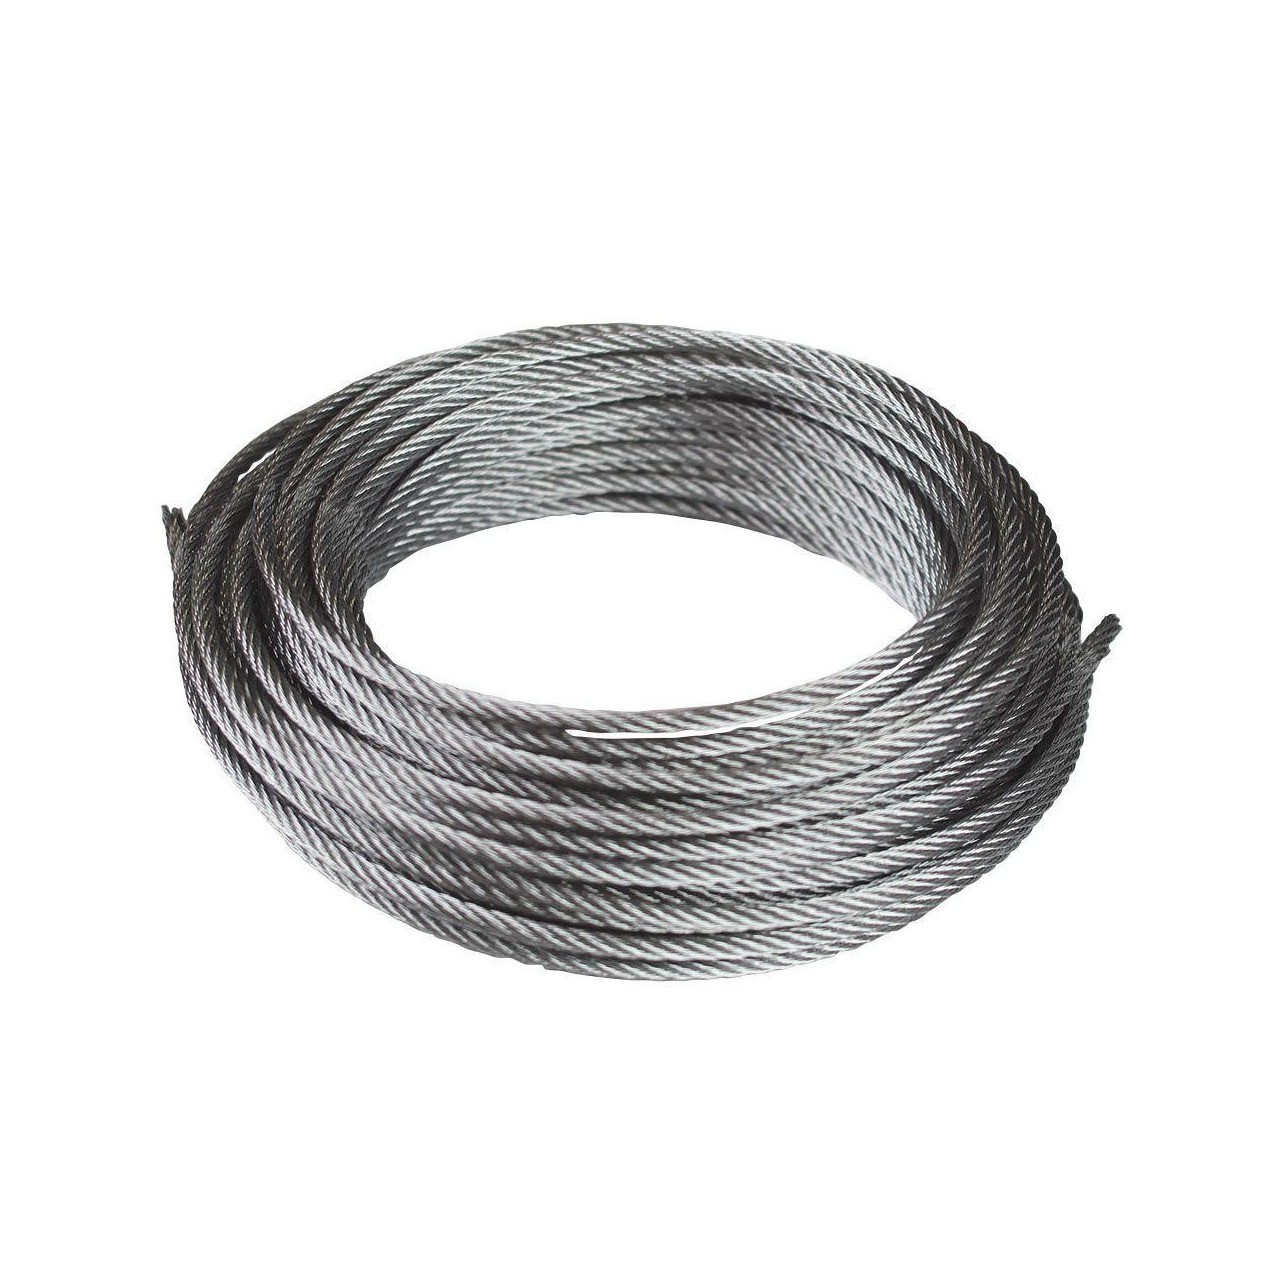 Cable de acero 6x19+1 DIN-3060